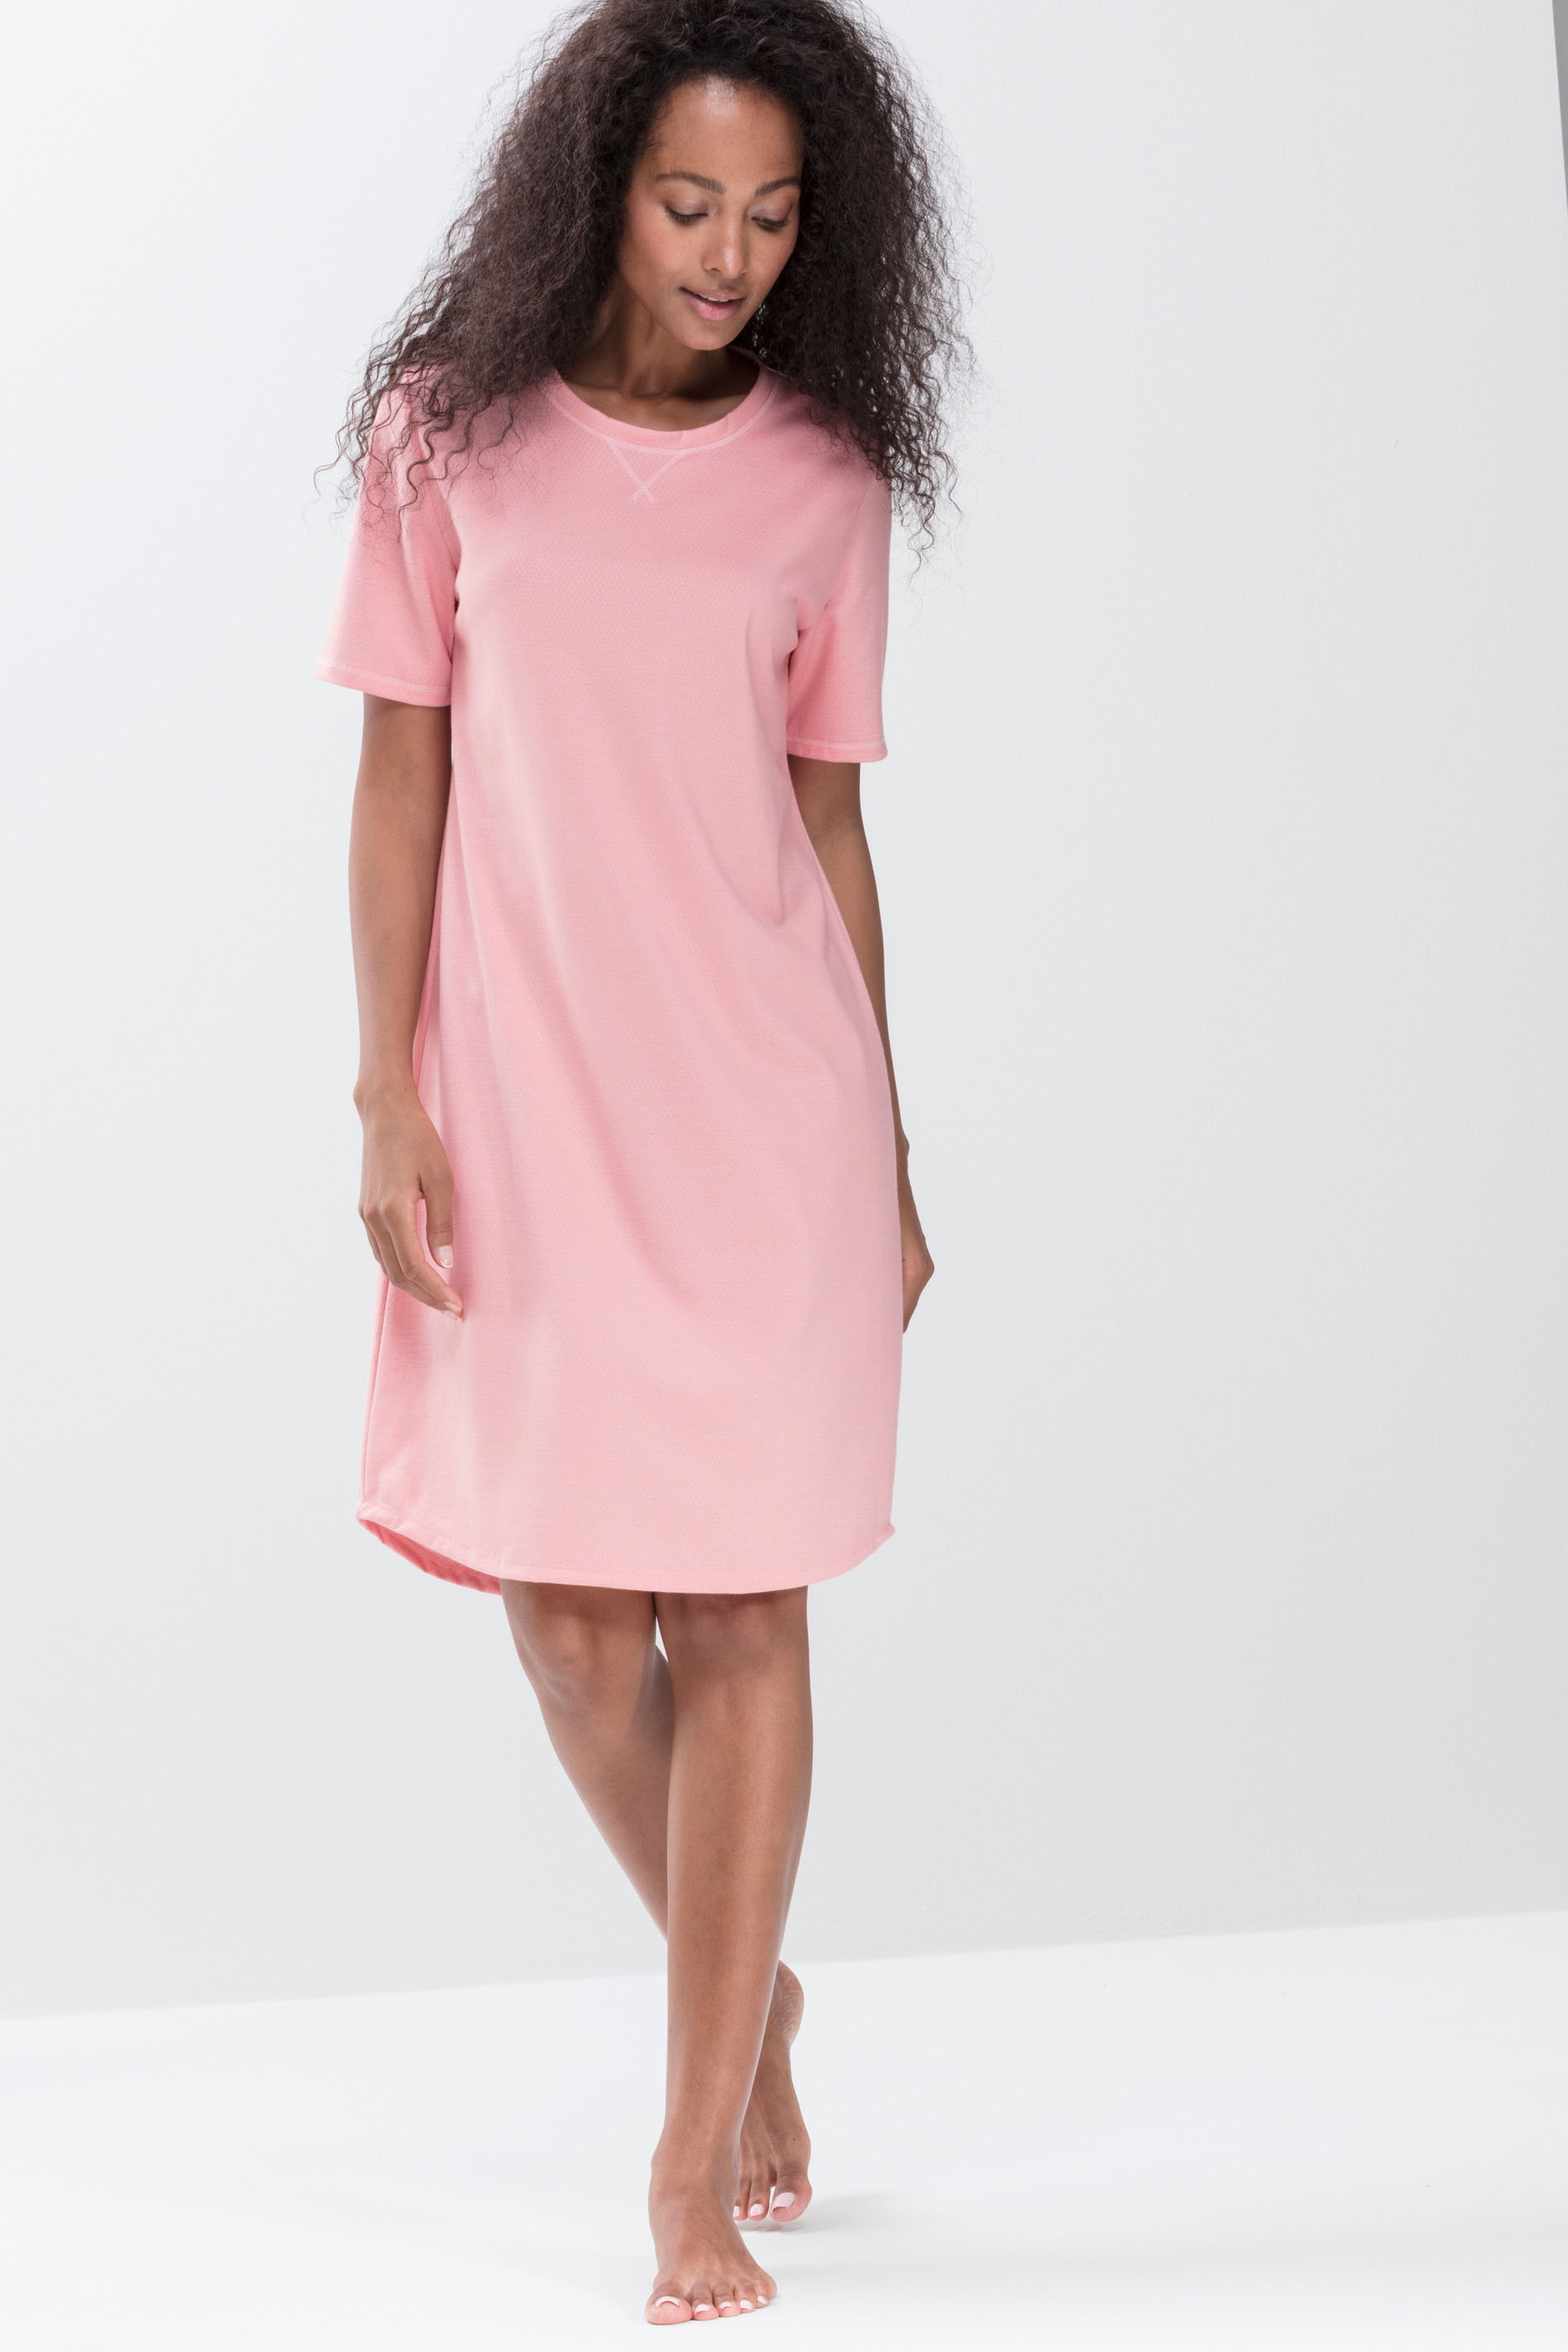 Nachthemd Powder Pink Serie Zzzleepwear Frontansicht | mey®